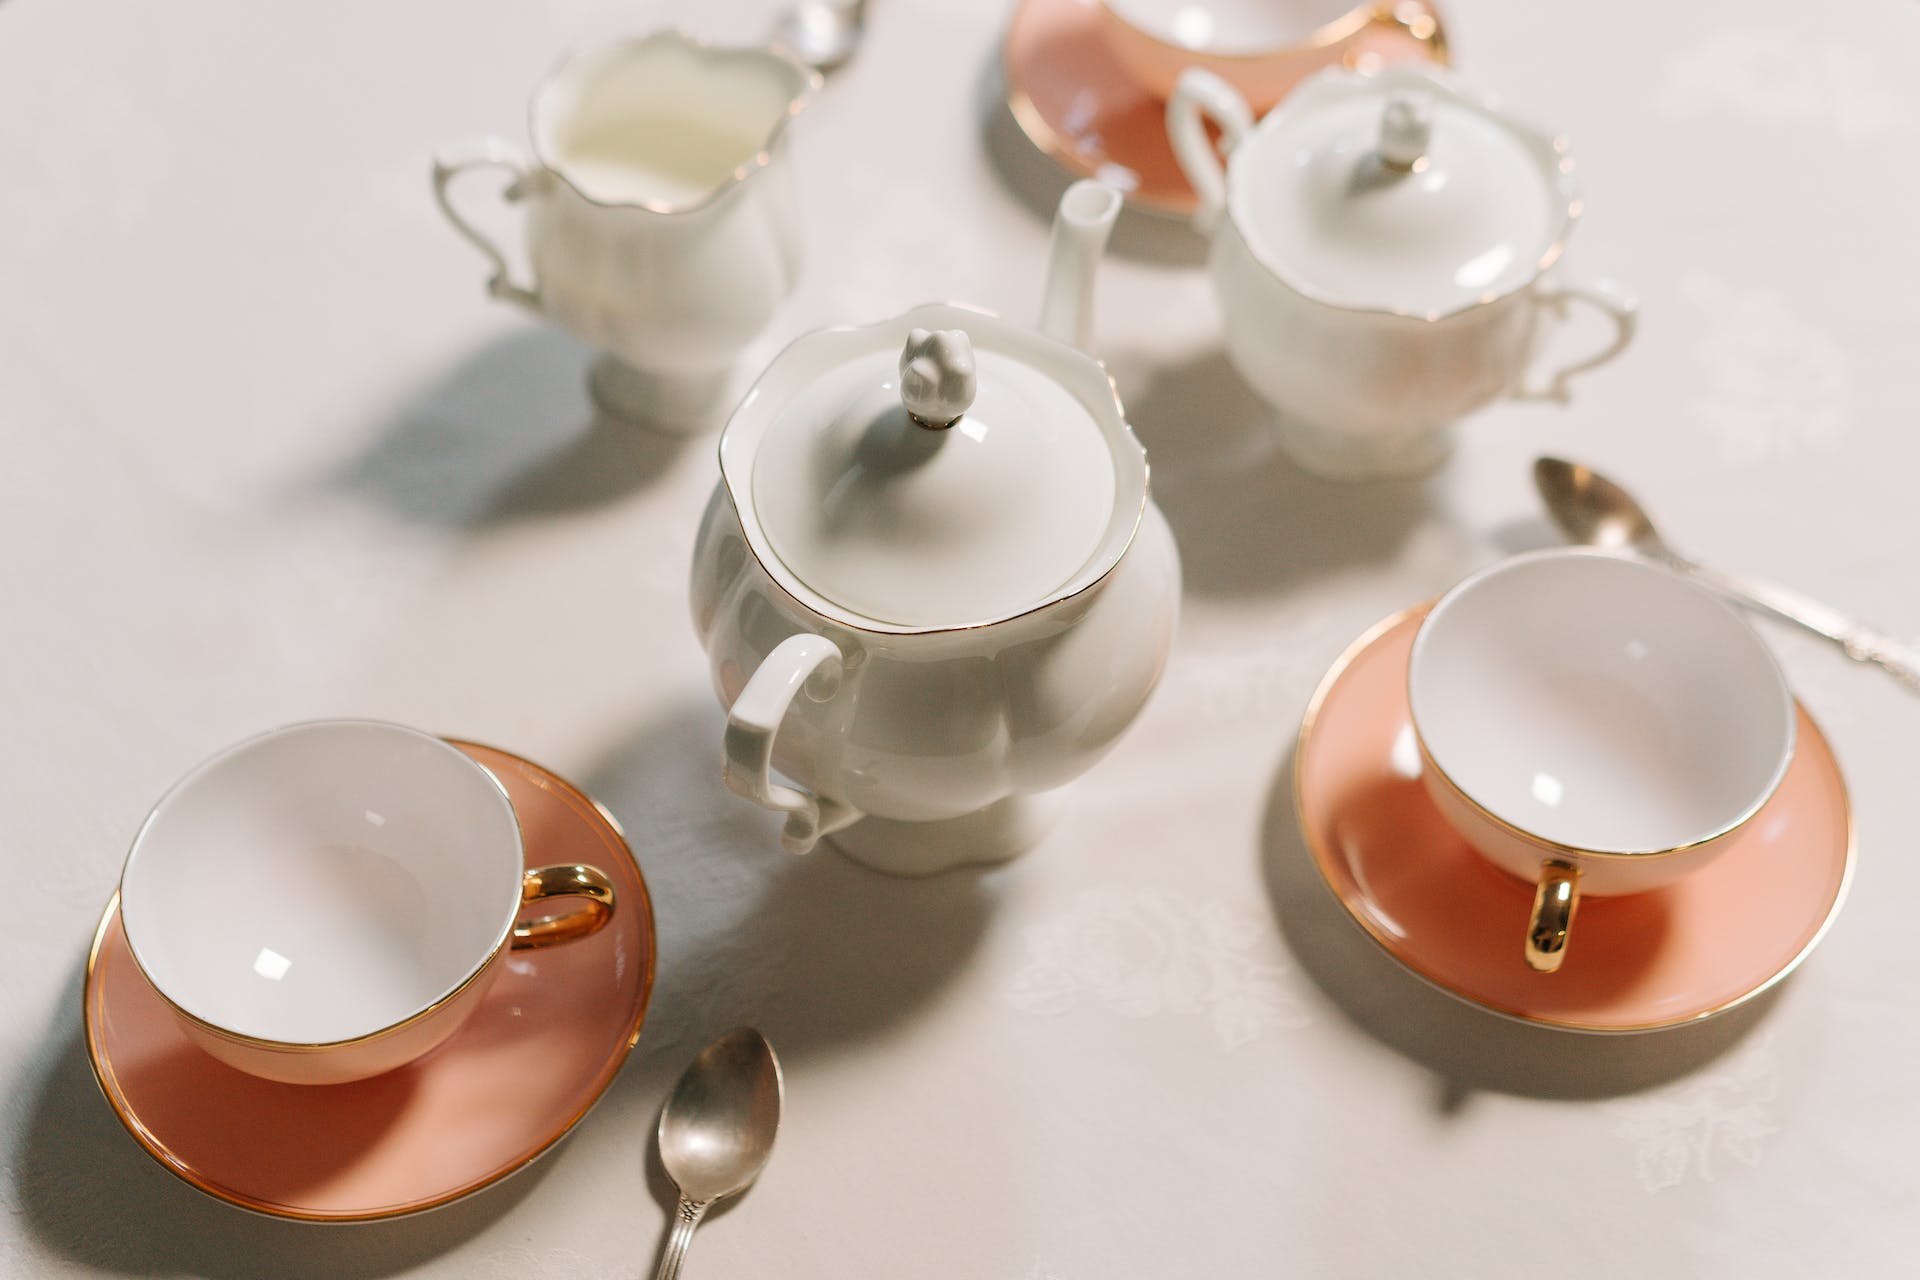 Juego de té rosa y blanco. | Fuente: Pexels